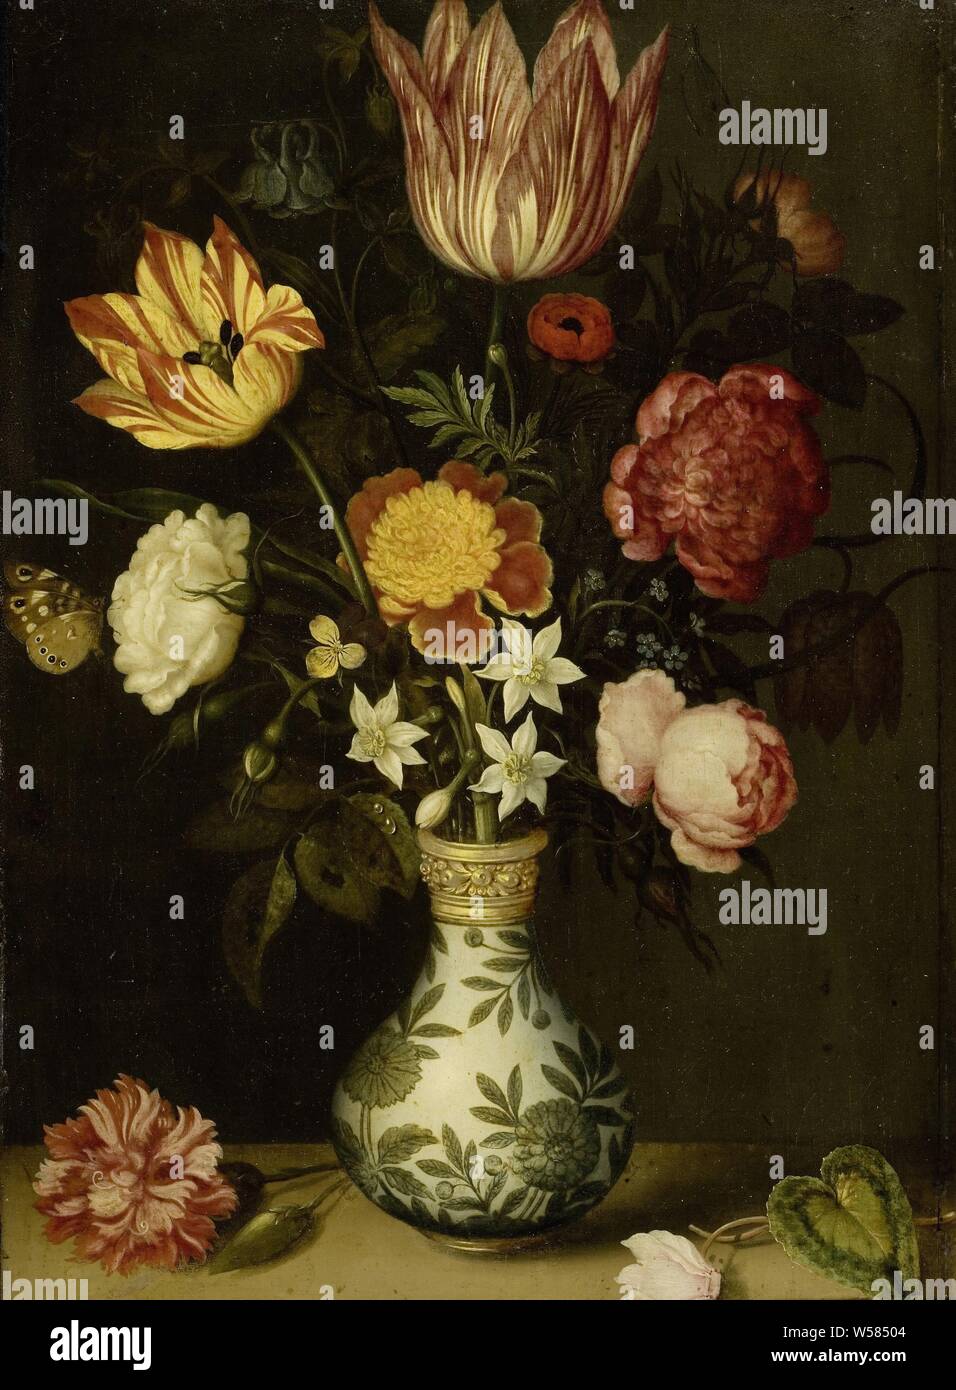 Nature morte avec fleurs dans un vase Wan Li, nature morte avec fleurs dans un vase Wan Li. Avec bouquet de tulipes, narcisses et roses dans un vase. Sur le socle en pierre et d'un œillet un cyclamen, fleurs dans un vase, des fleurs : rose, fleurs : fleurs, tulipes, narcisses : fleurs : oeillet, récipient ou la céramique : jar, verseuse, pot, vase, Ambrosius Bosschaert, 1619, cuivre (métal), de la peinture à l'huile (peinture), support : H 31 cm × w 22,5 cm Banque D'Images